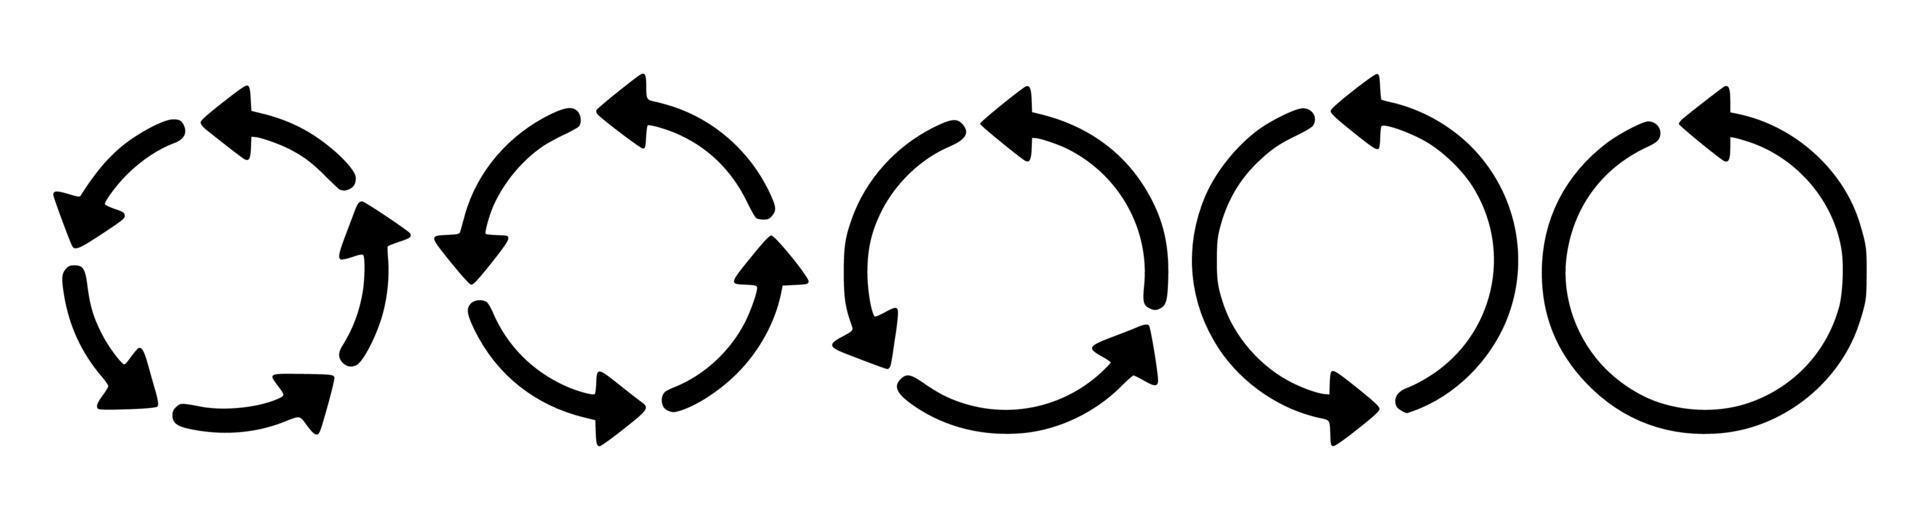 símbolo de reciclaje en blanco y negro vector